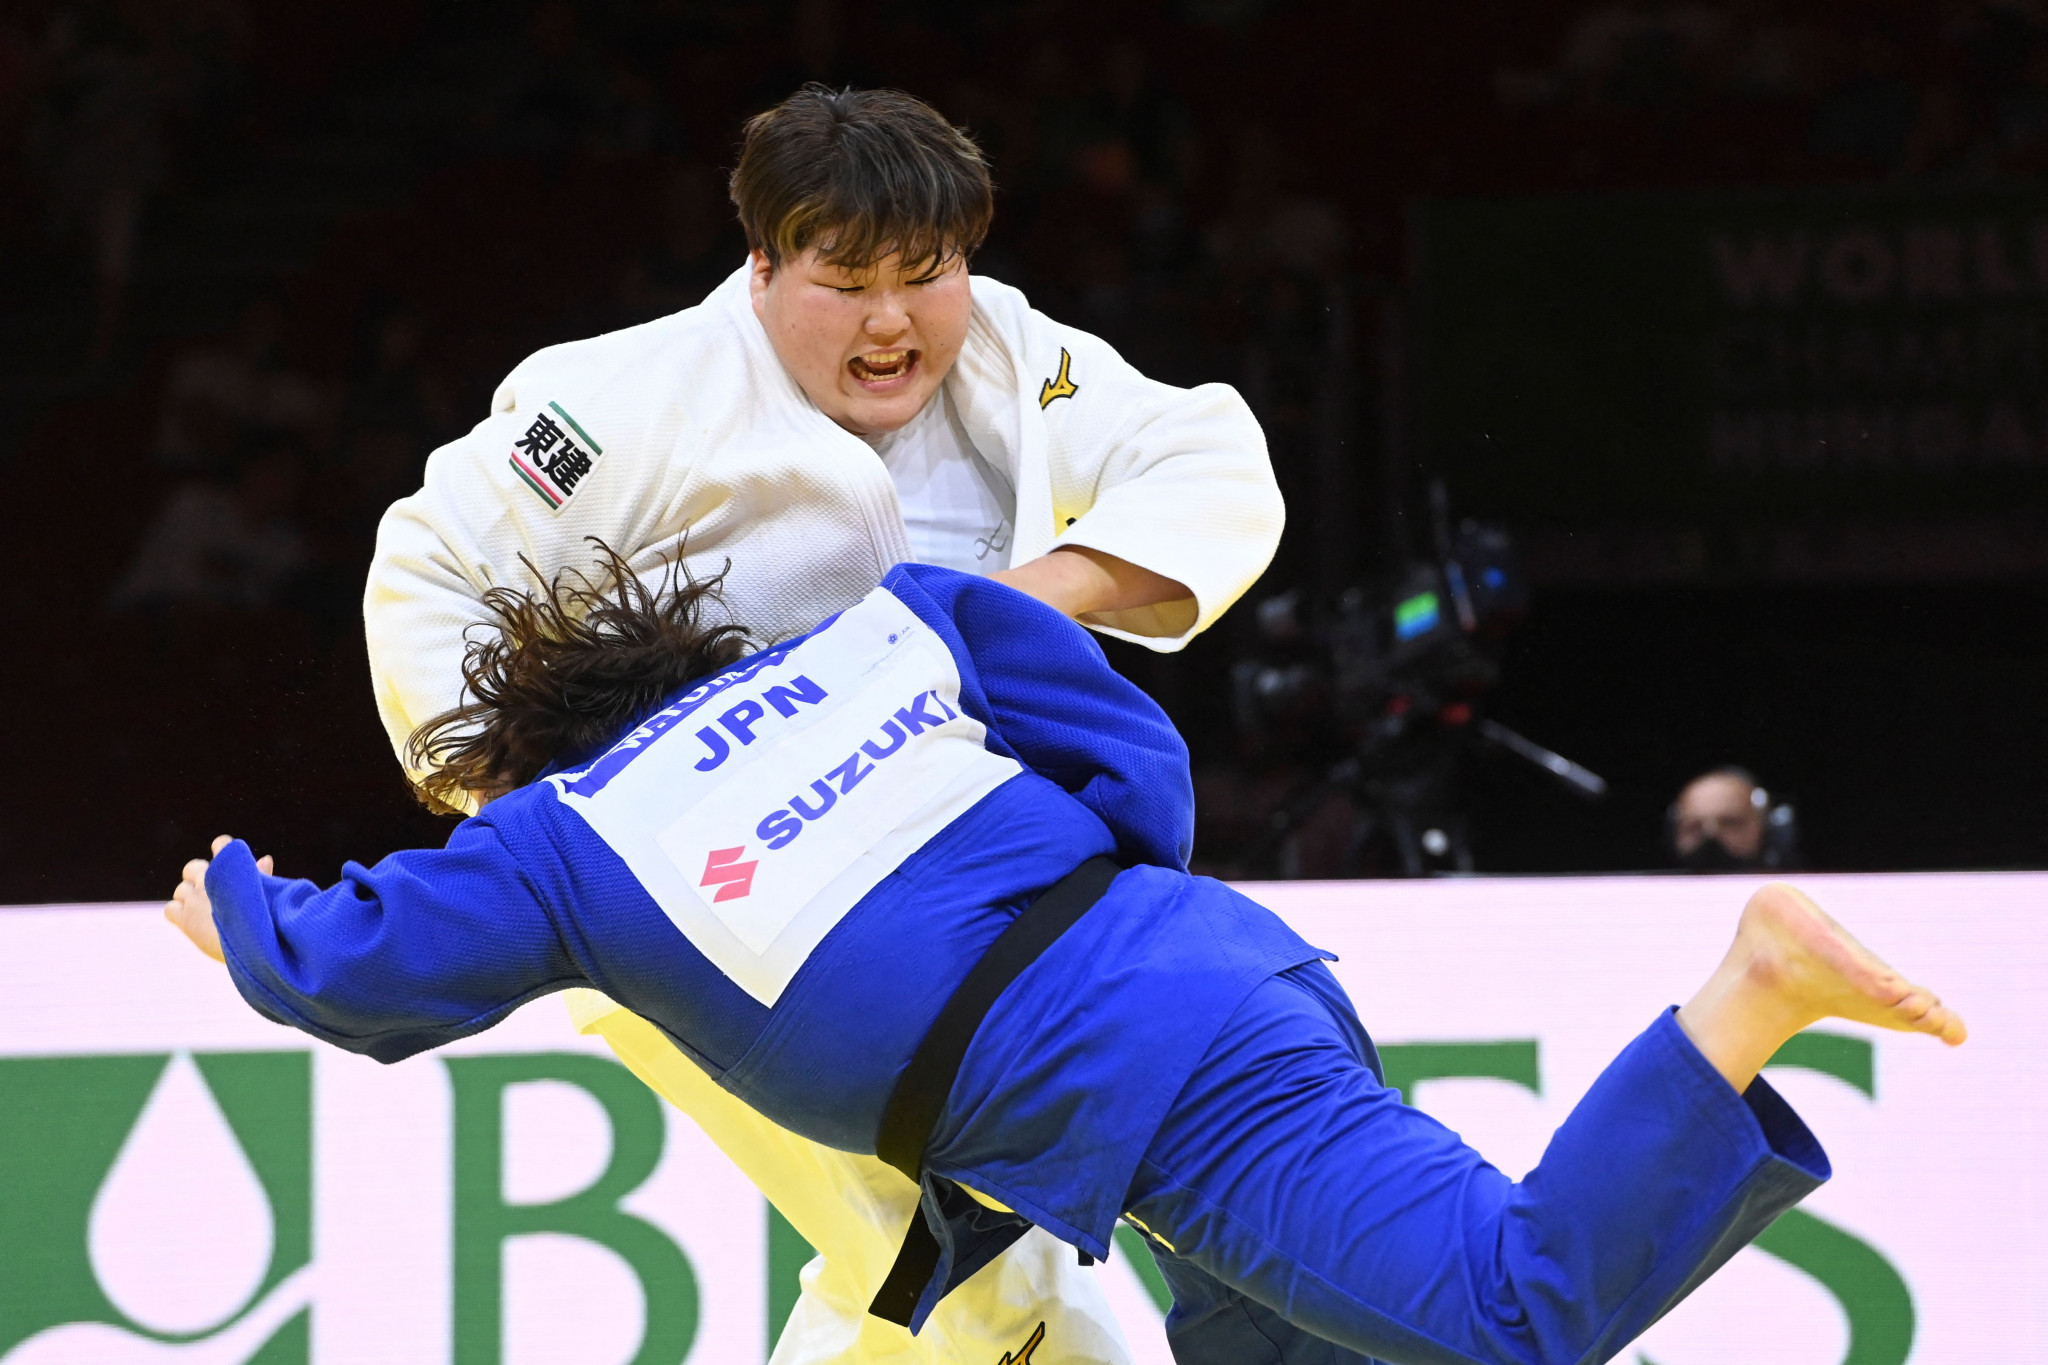 Les Championnats Du Monde De Judo Devraient Se Terminer Ce Soir ©Getty Images